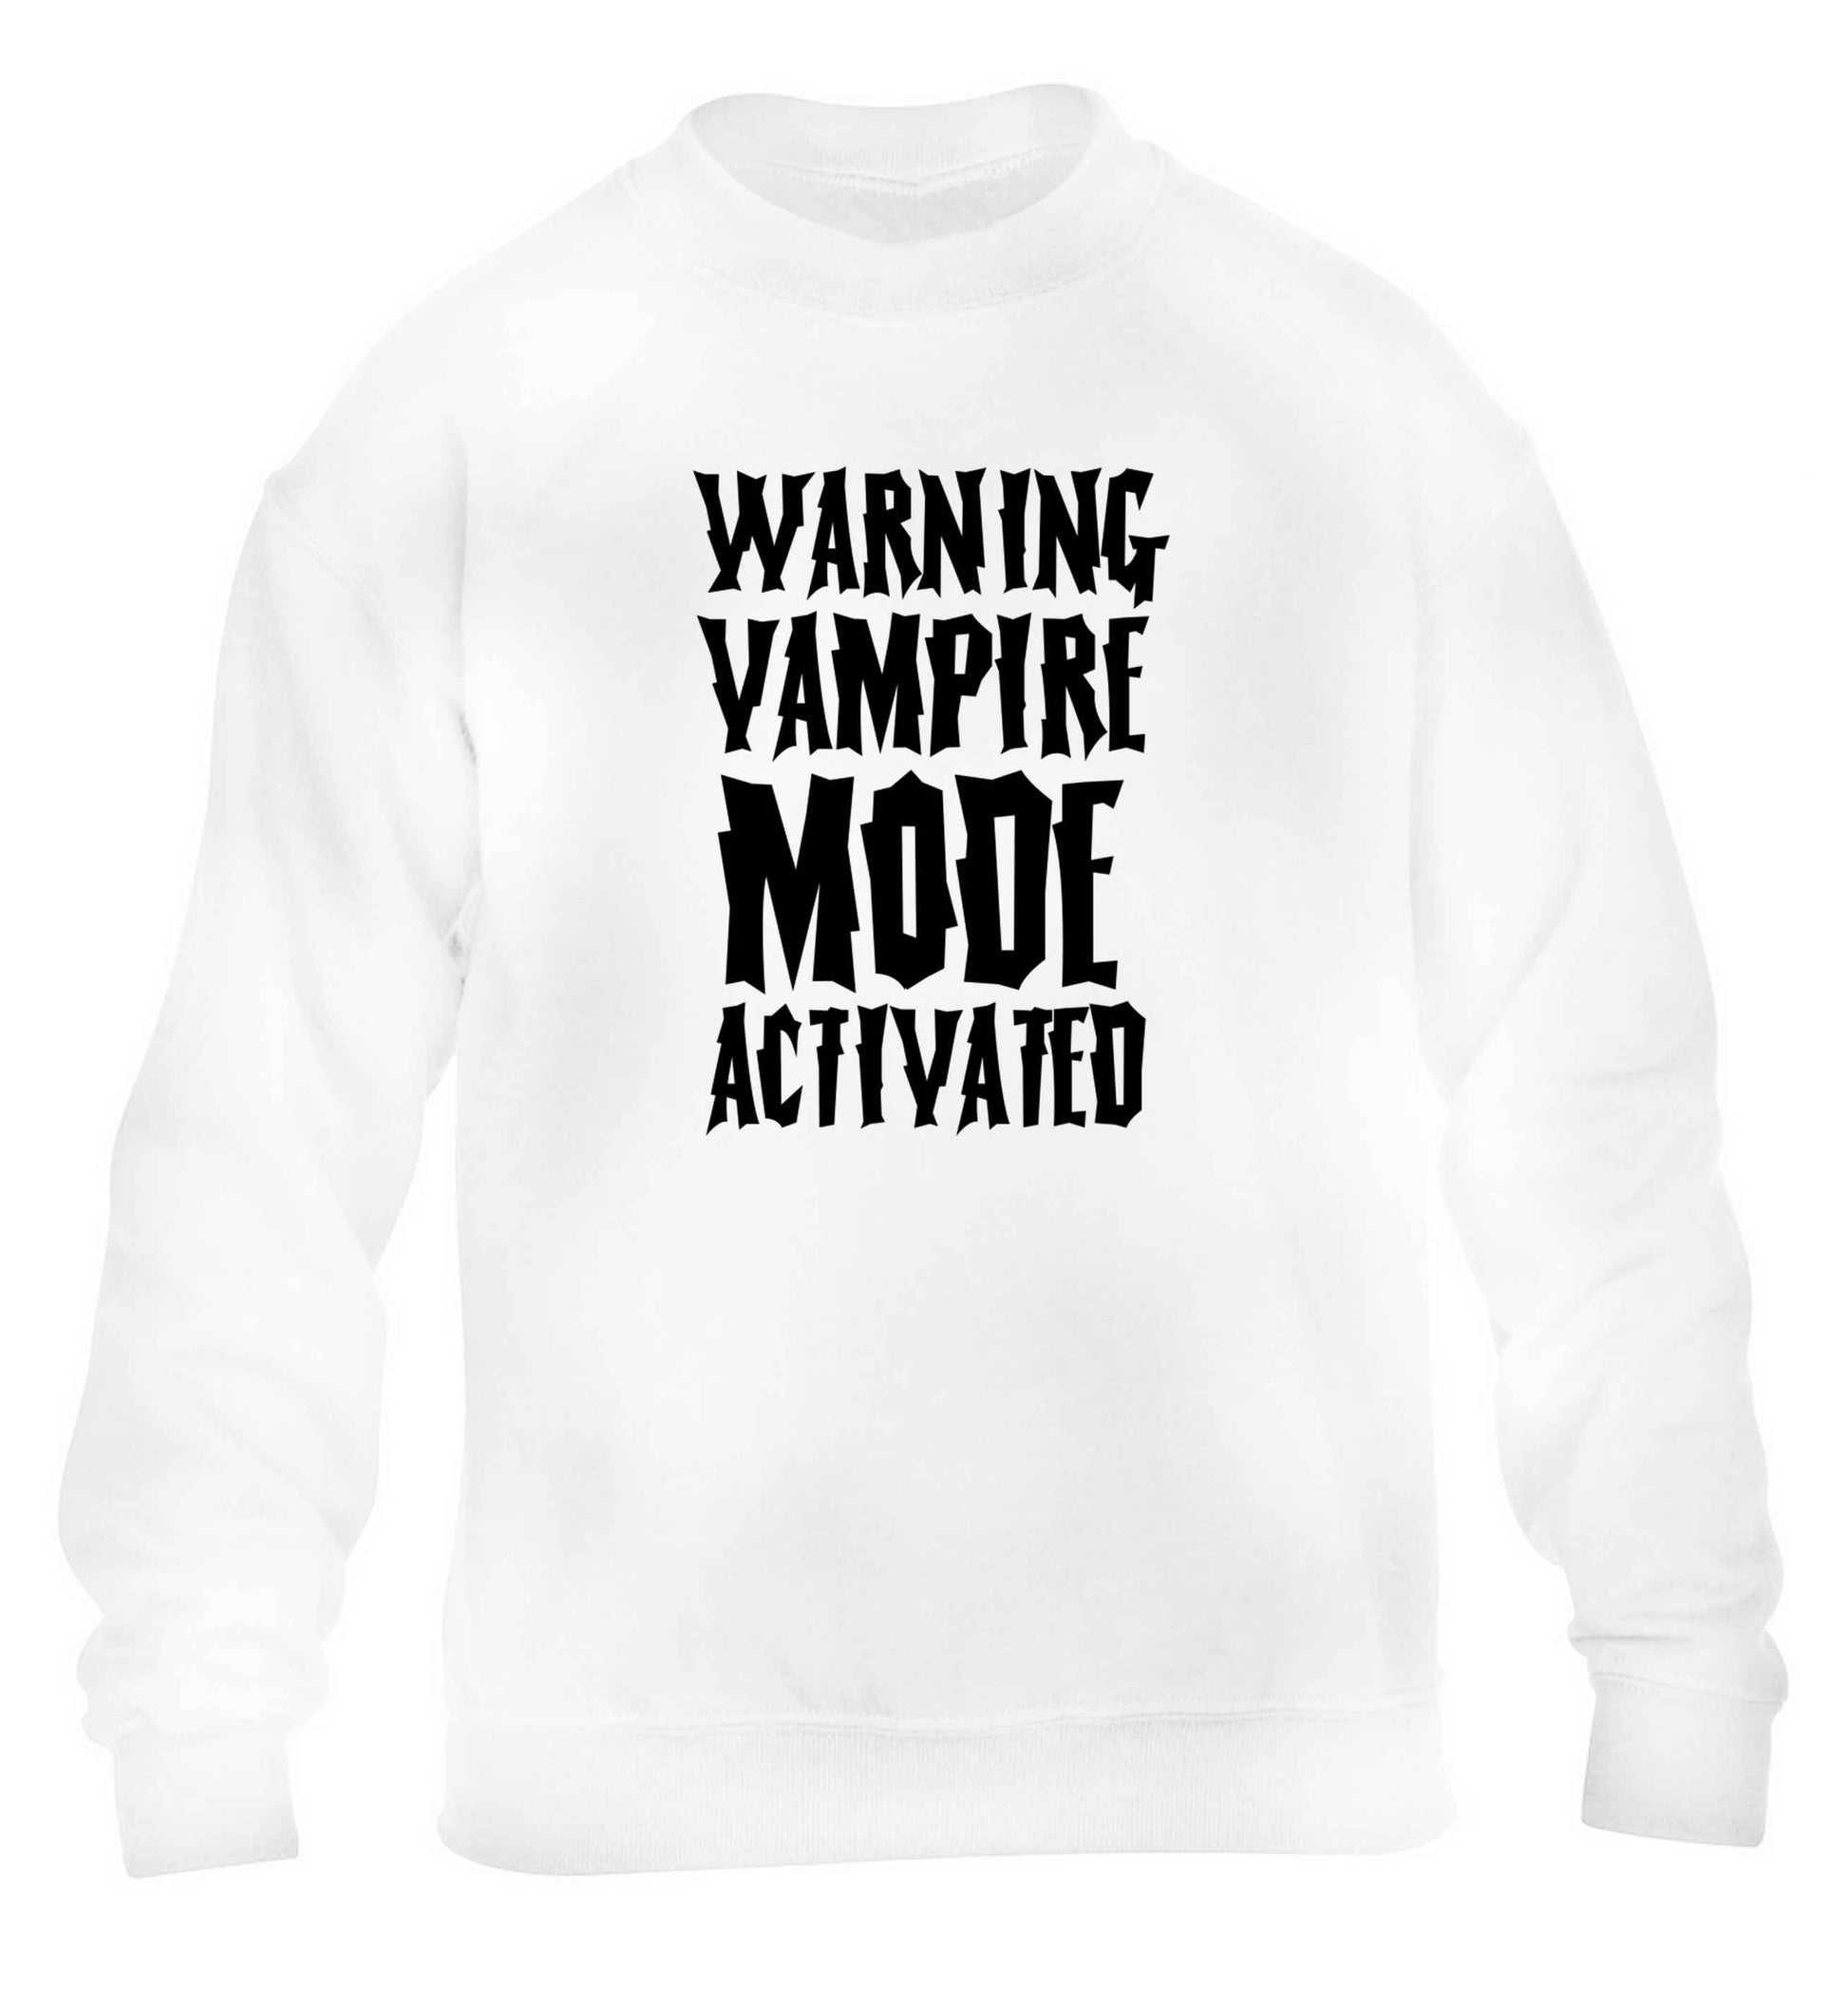 Warning vampire mode activated children's white sweater 12-13 Years